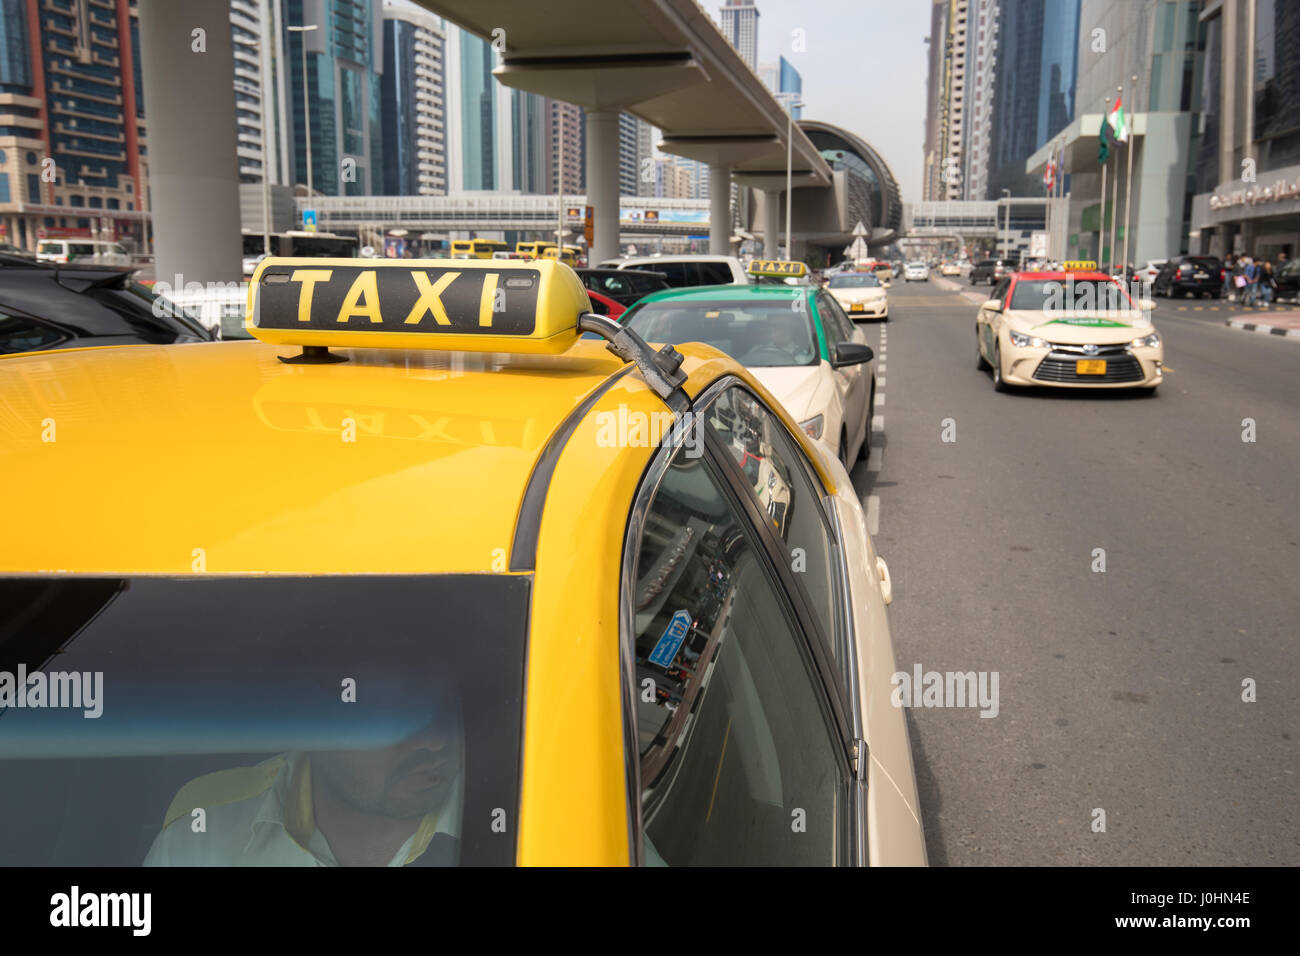 Taxi in Dubai, UAE Stock Photo